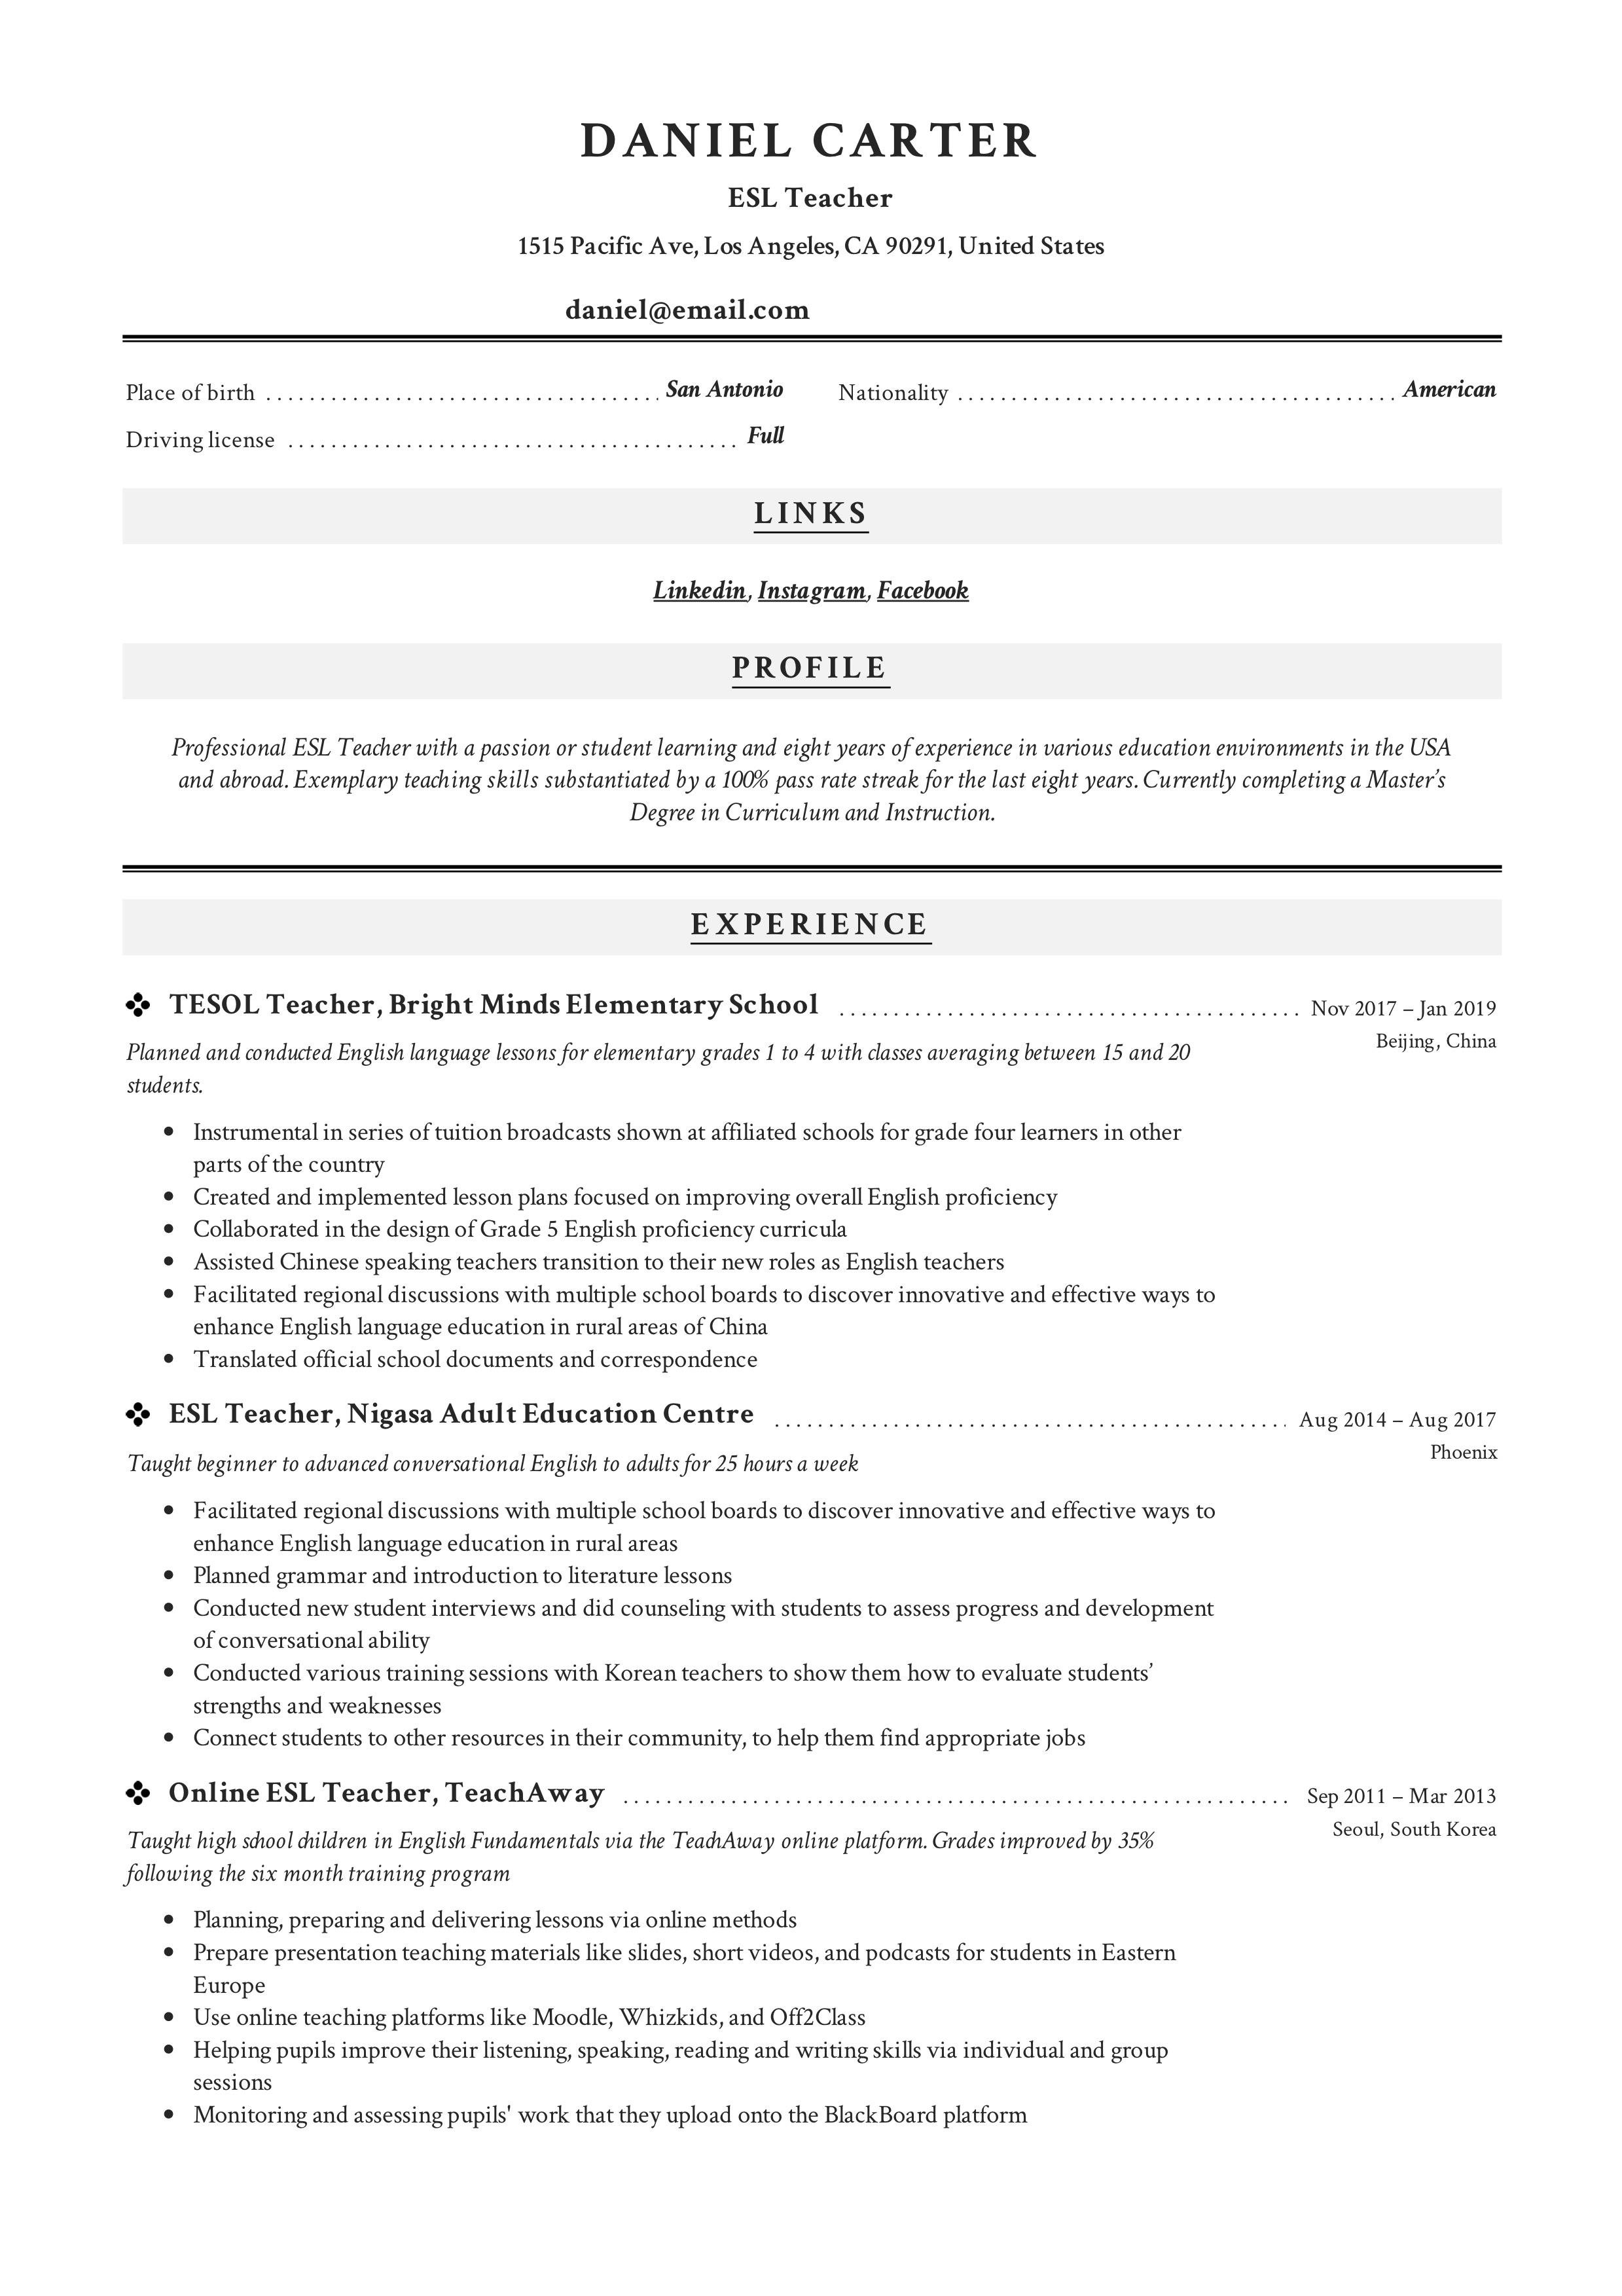 Buy resume for writing esl